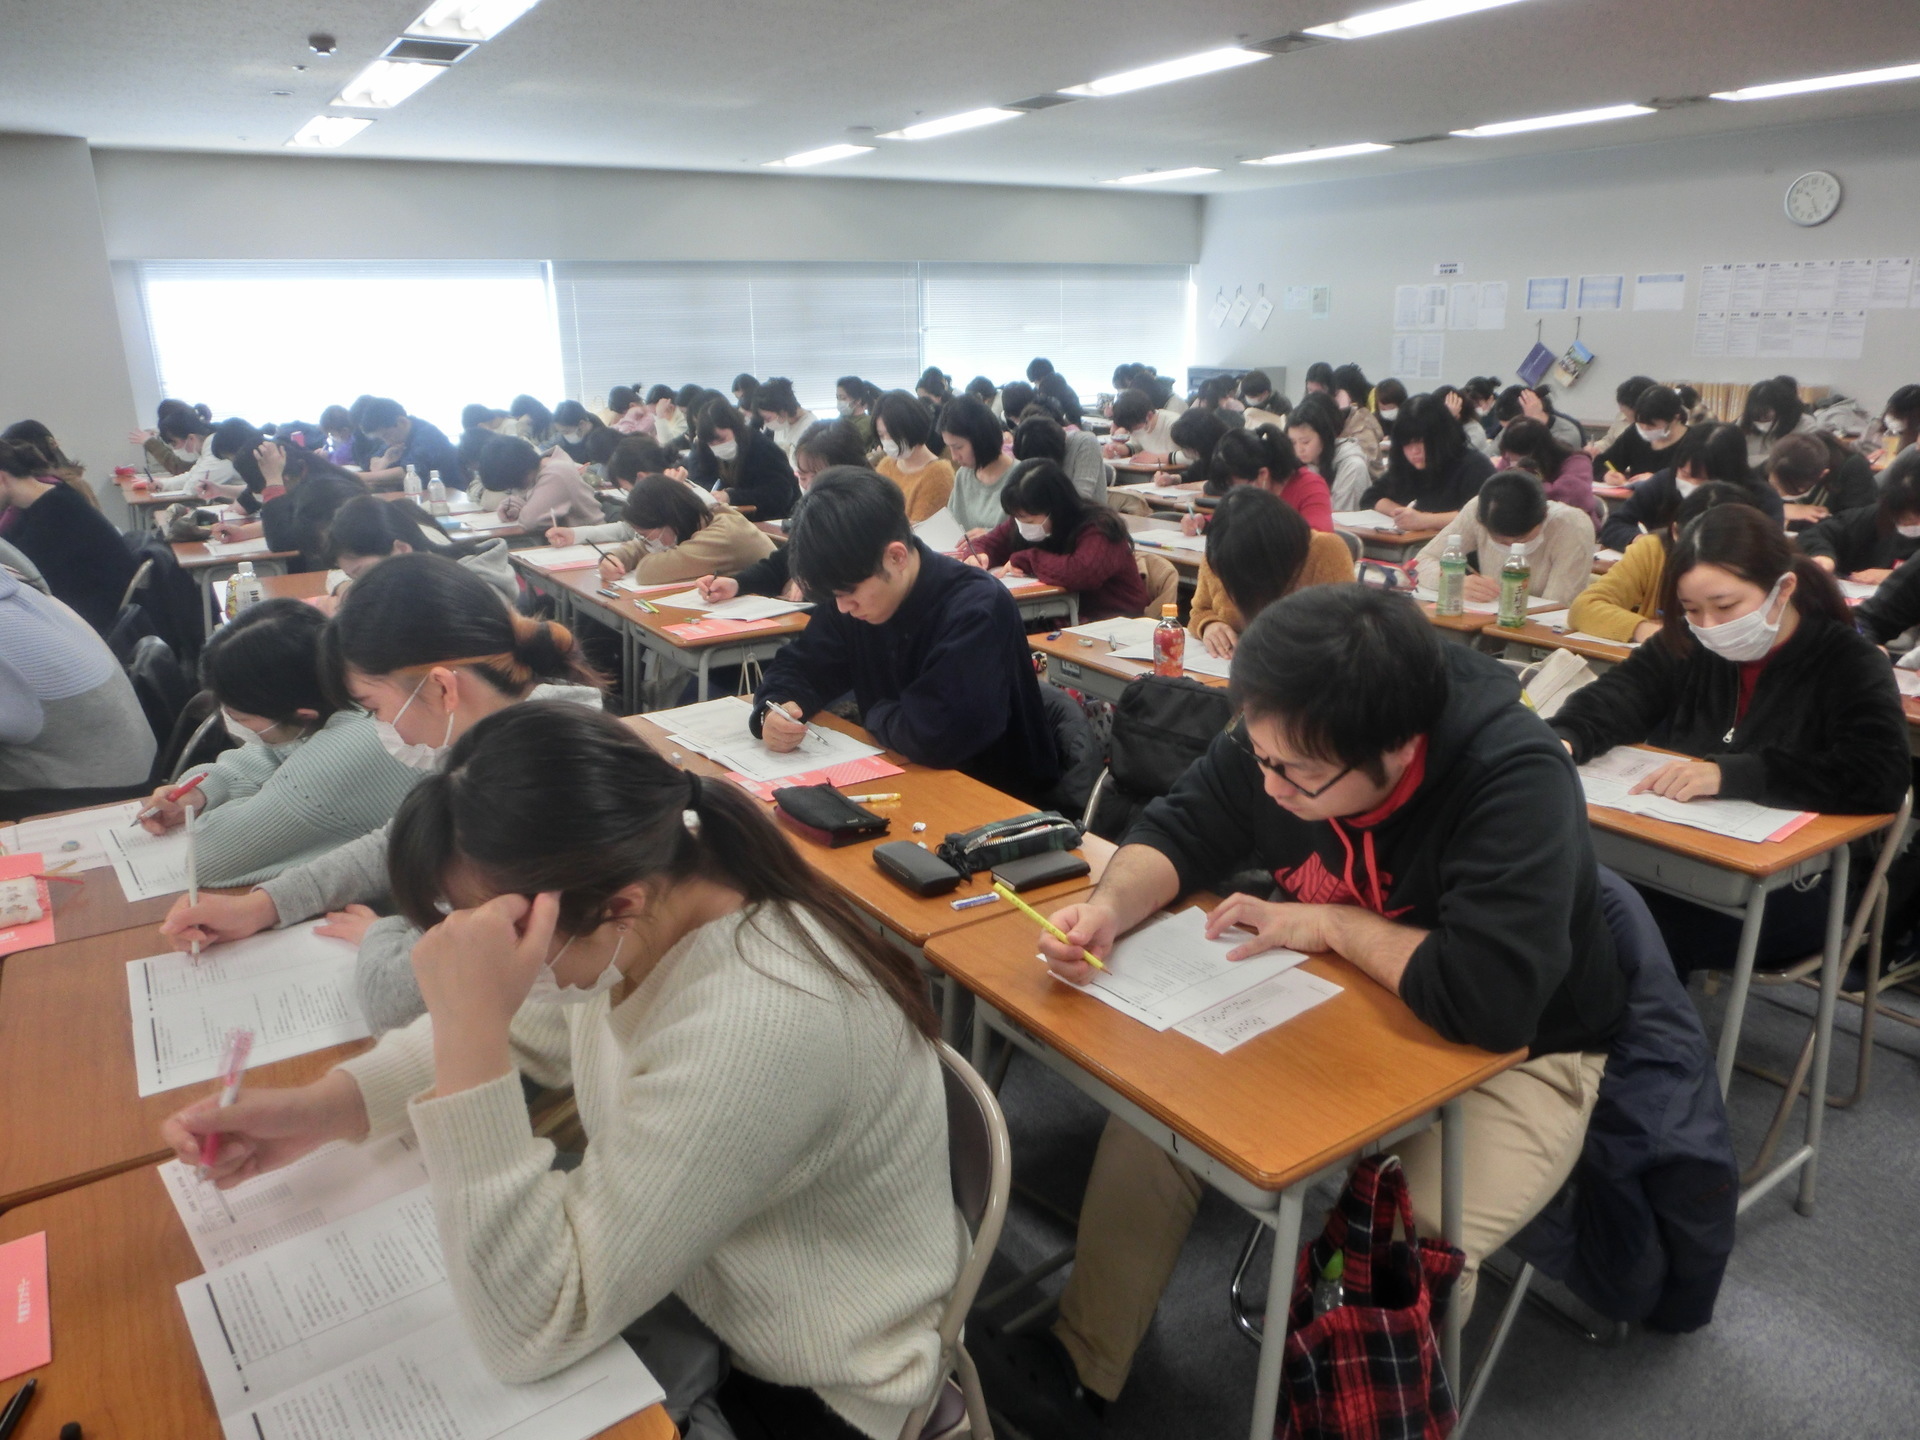 看護師国試 予想問題演習を実施しました 東京アカデミー熊本校 教員採用試験 看護師国家試験 公務員試験 のブログ